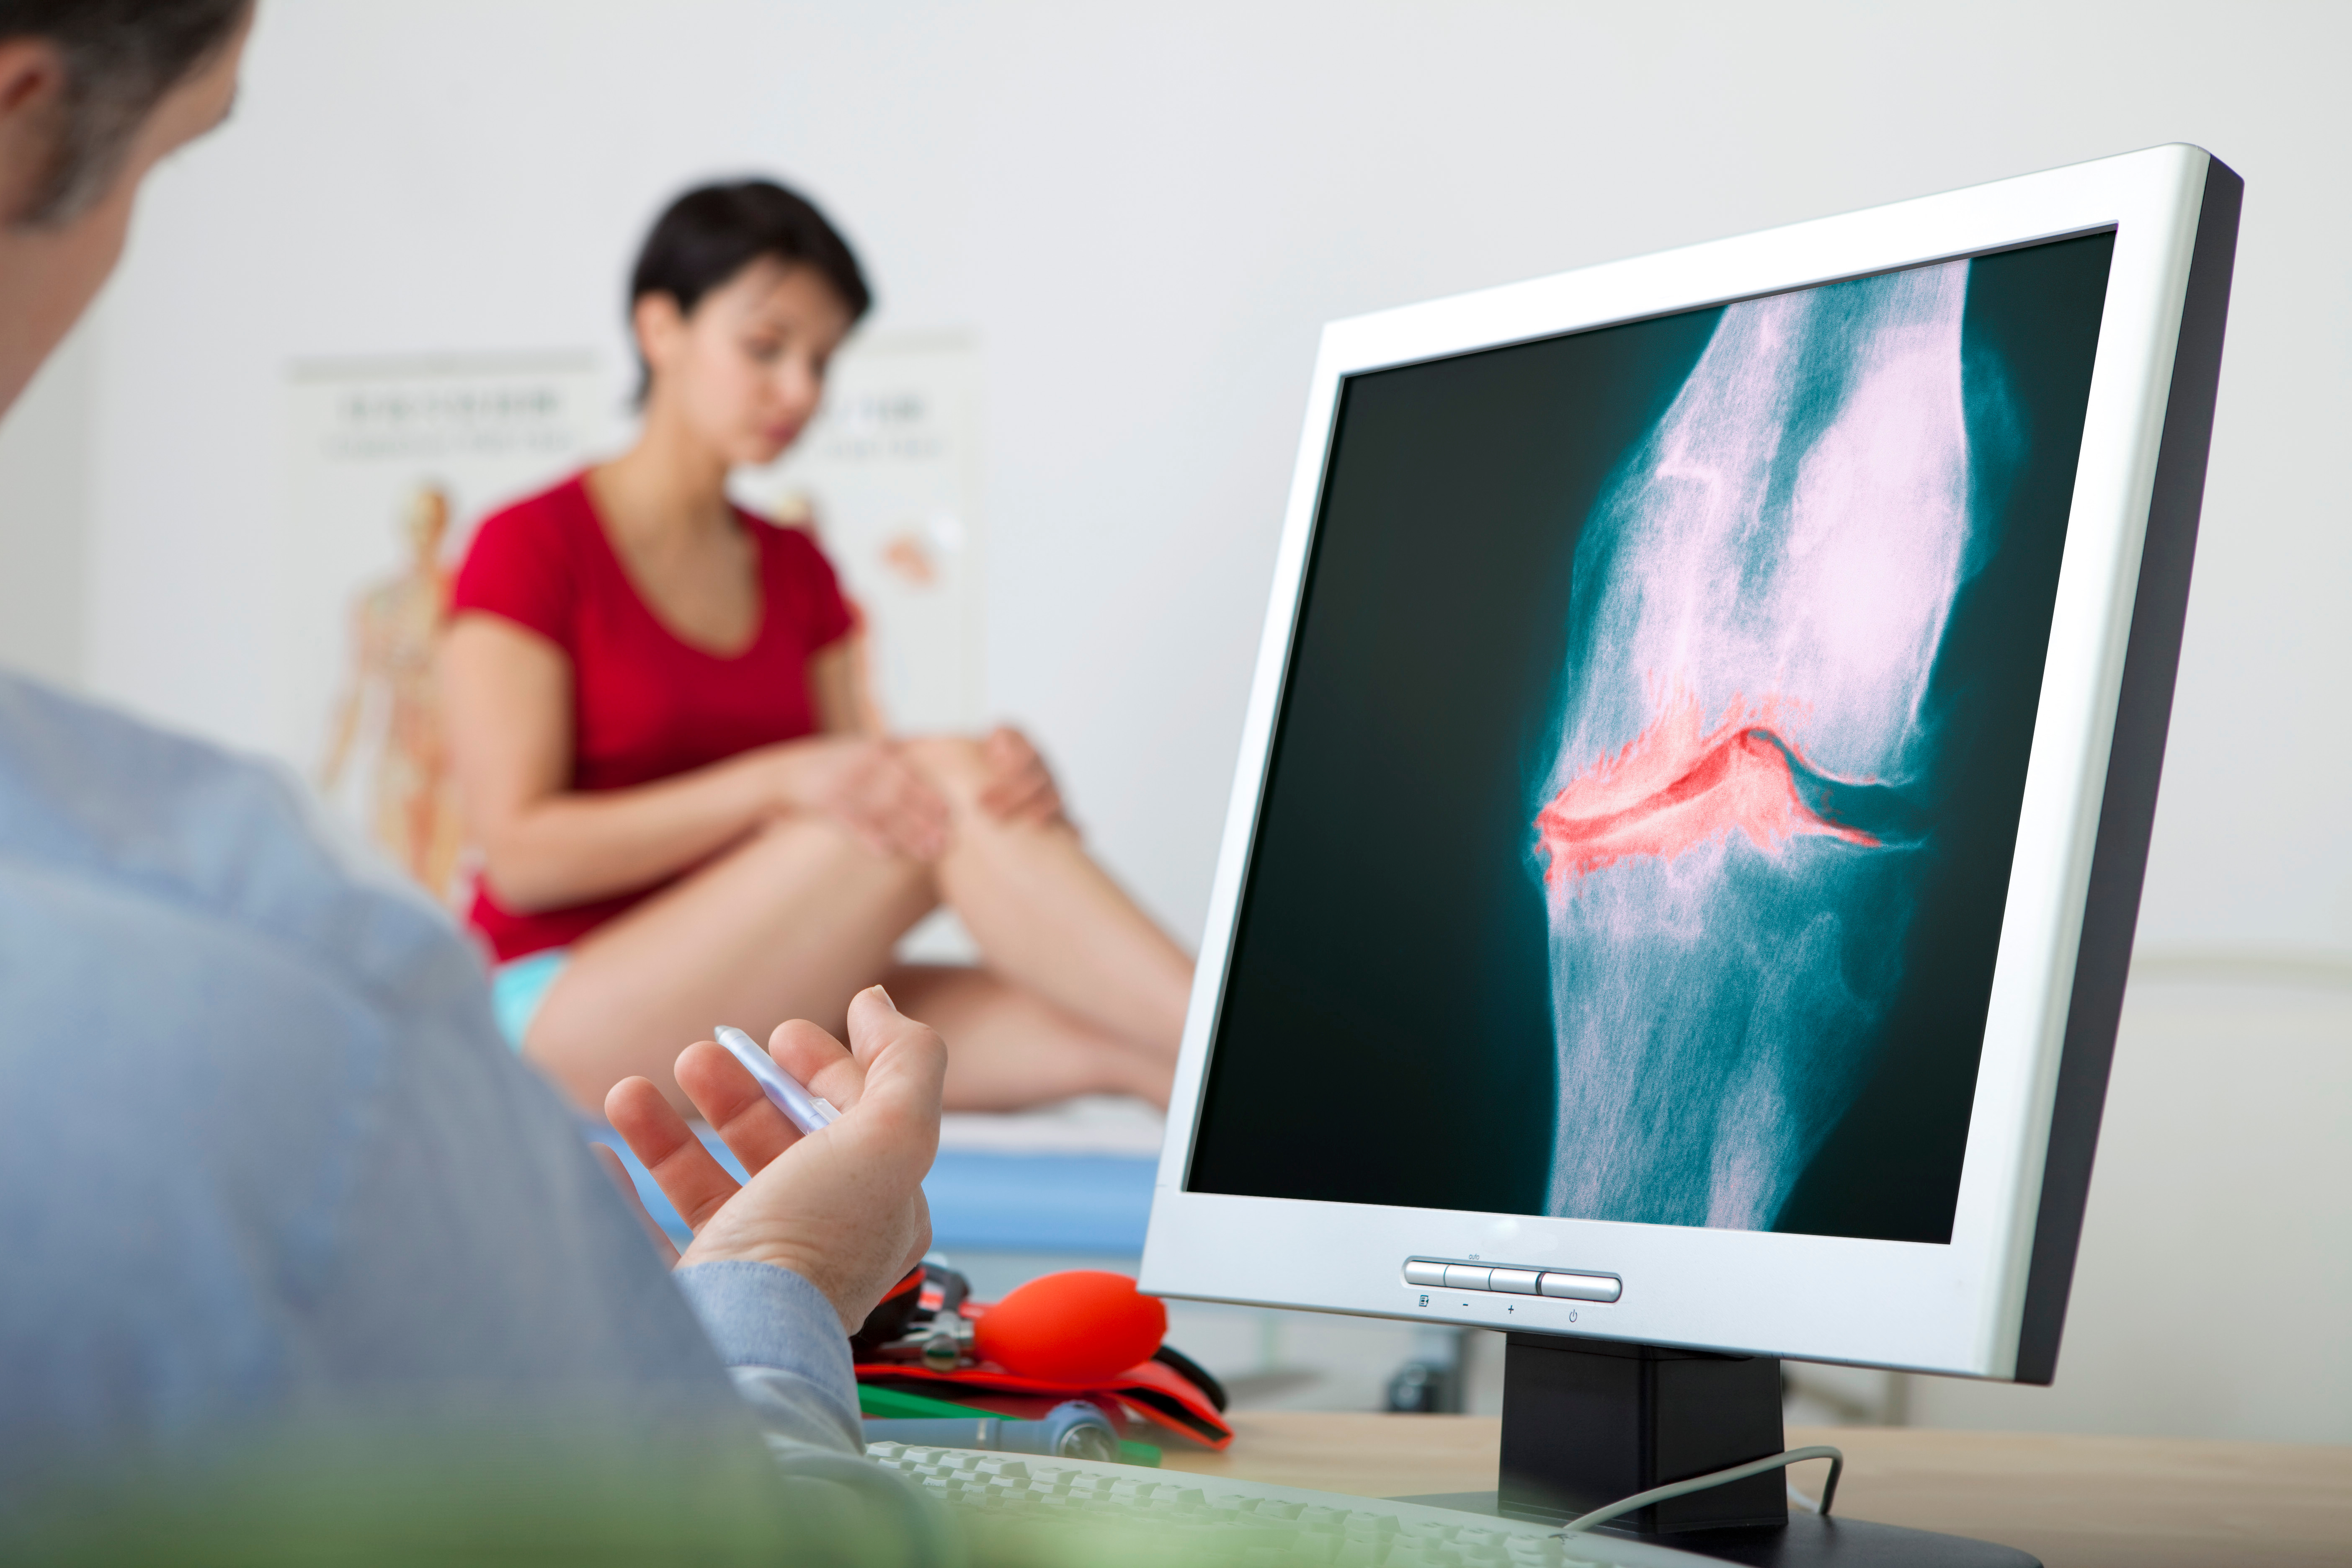 L'espoir d'un nouveau traitement pour l'arthrose du genou